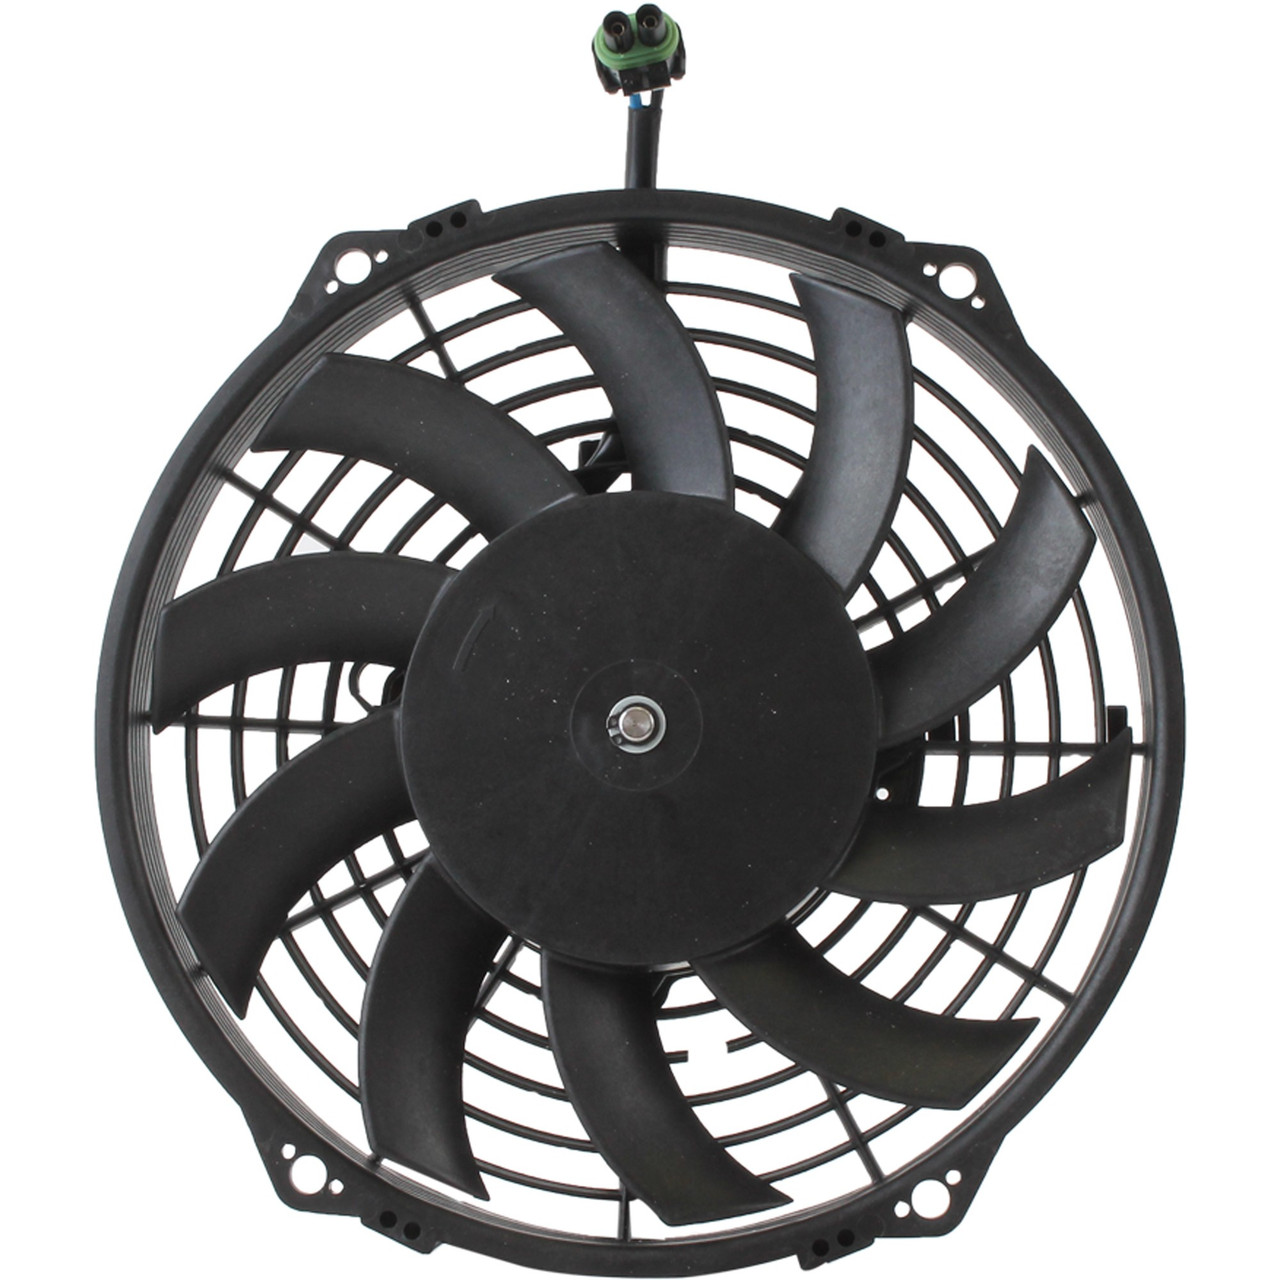 Radiator Cooling Fan Motor for Polaris 2410383 